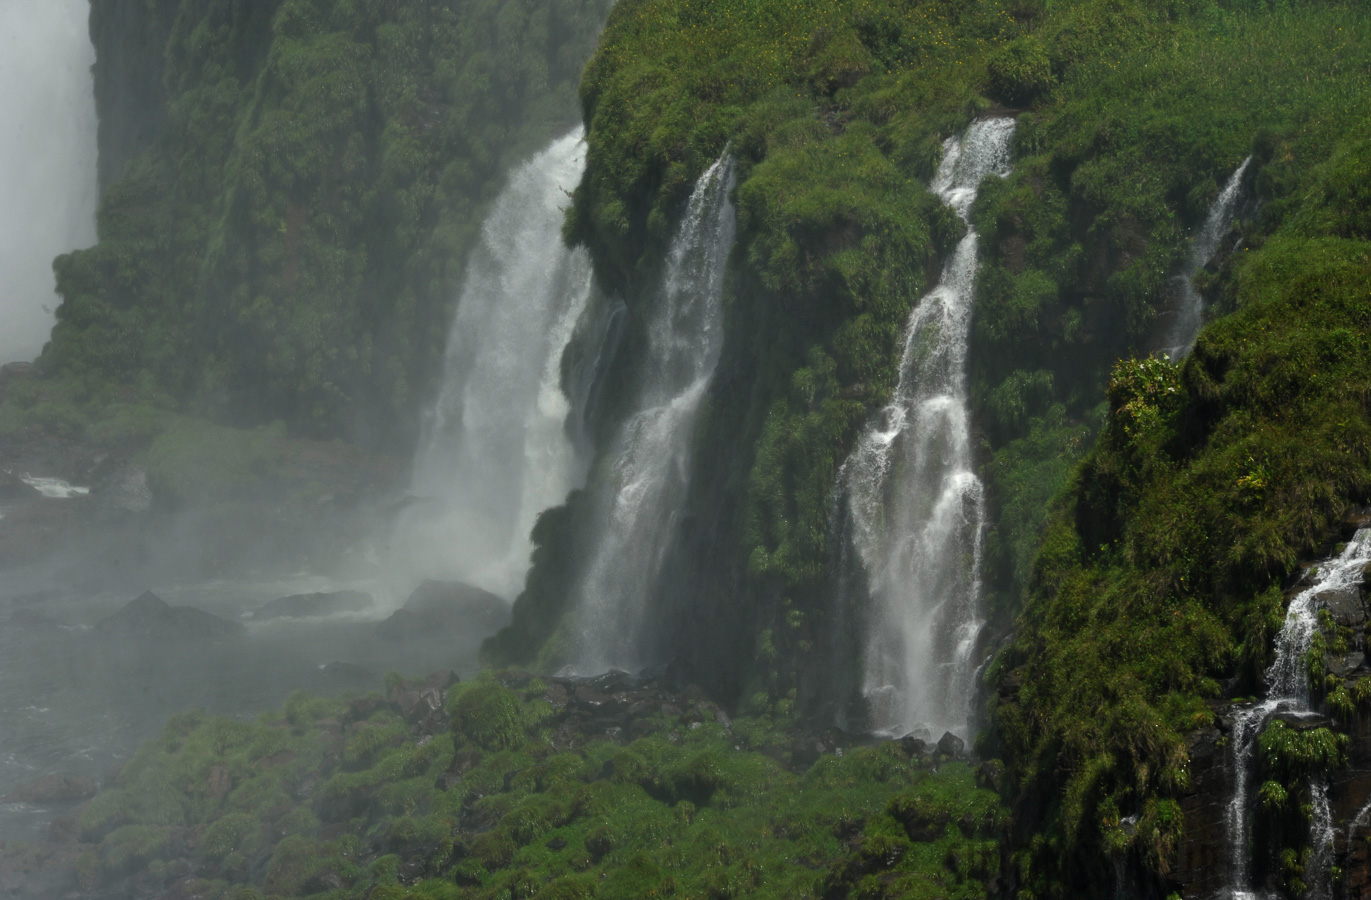 Cataratas del Iguazu [230 mm, 1/250 sec at f / 16, ISO 400]